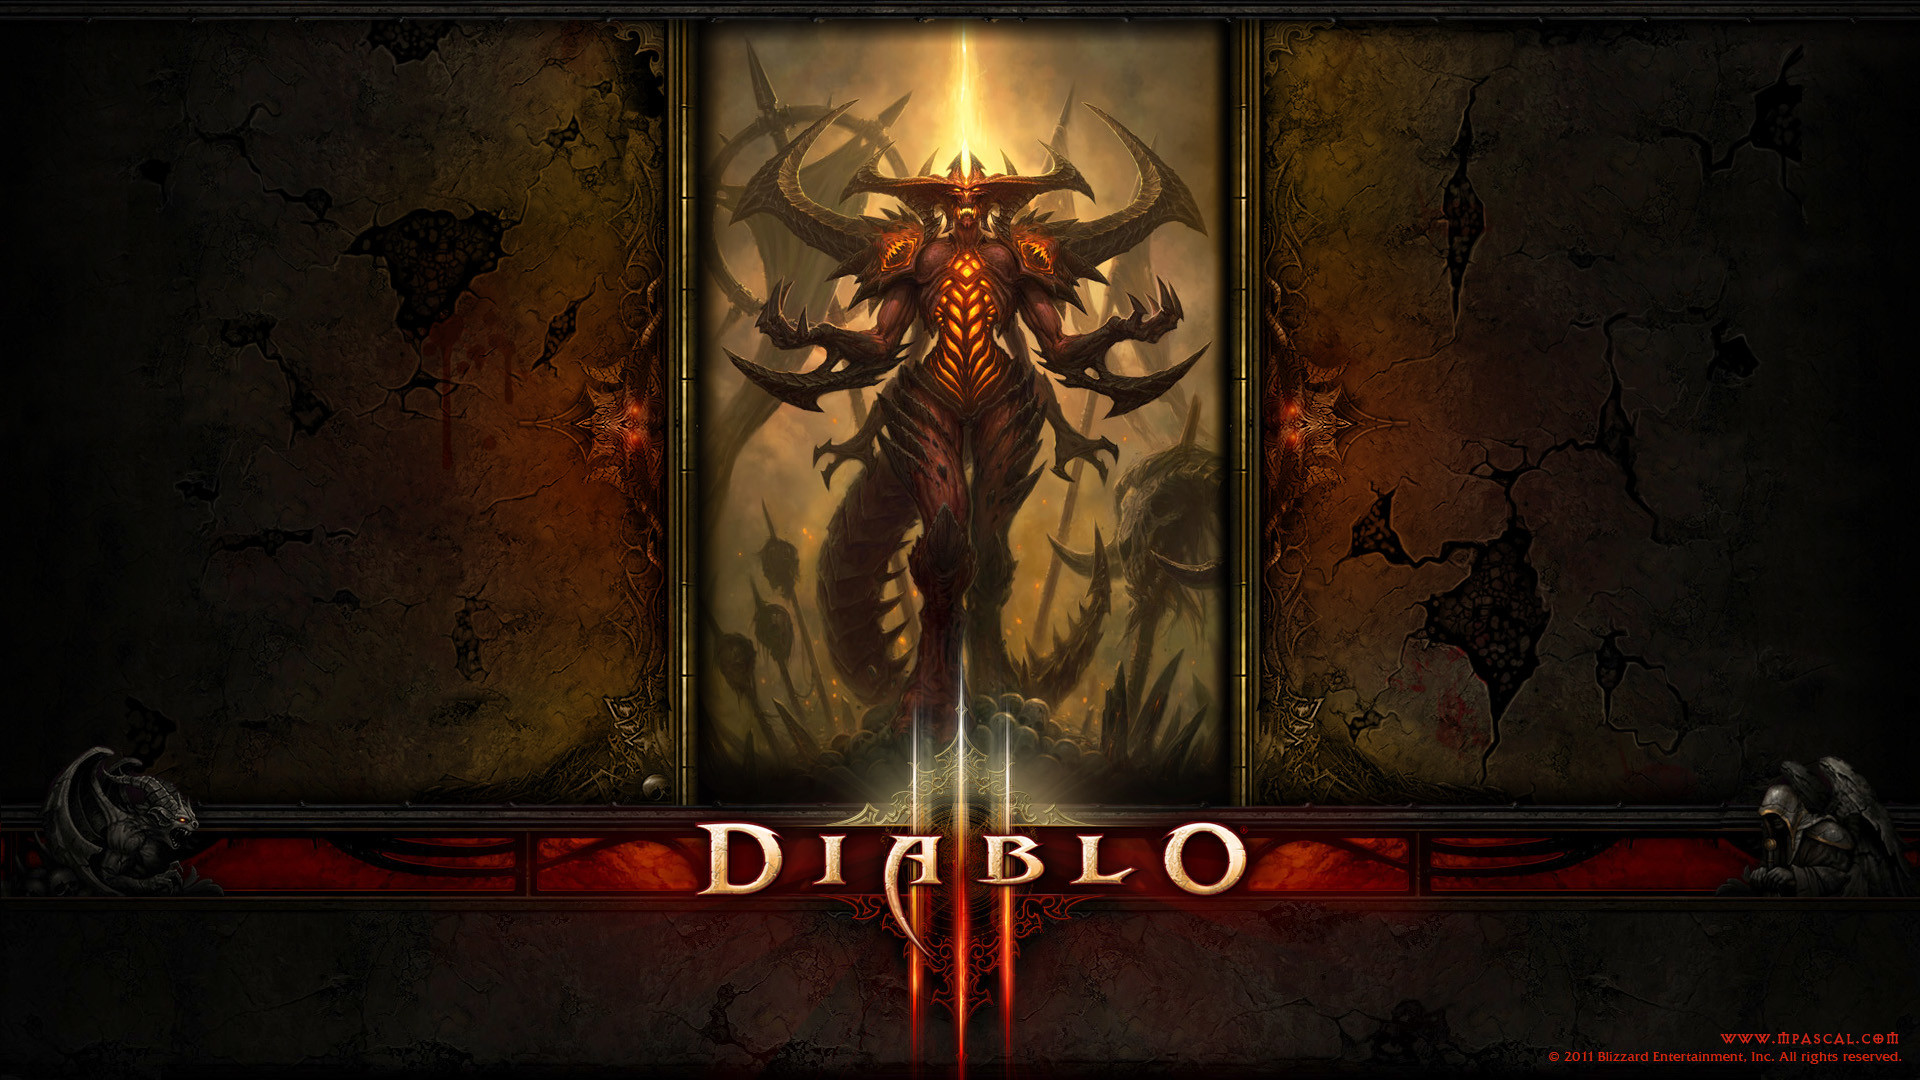 1920x1080 Wallpaper - Diablo 3 New Diablo Wallpaper by Panperkin